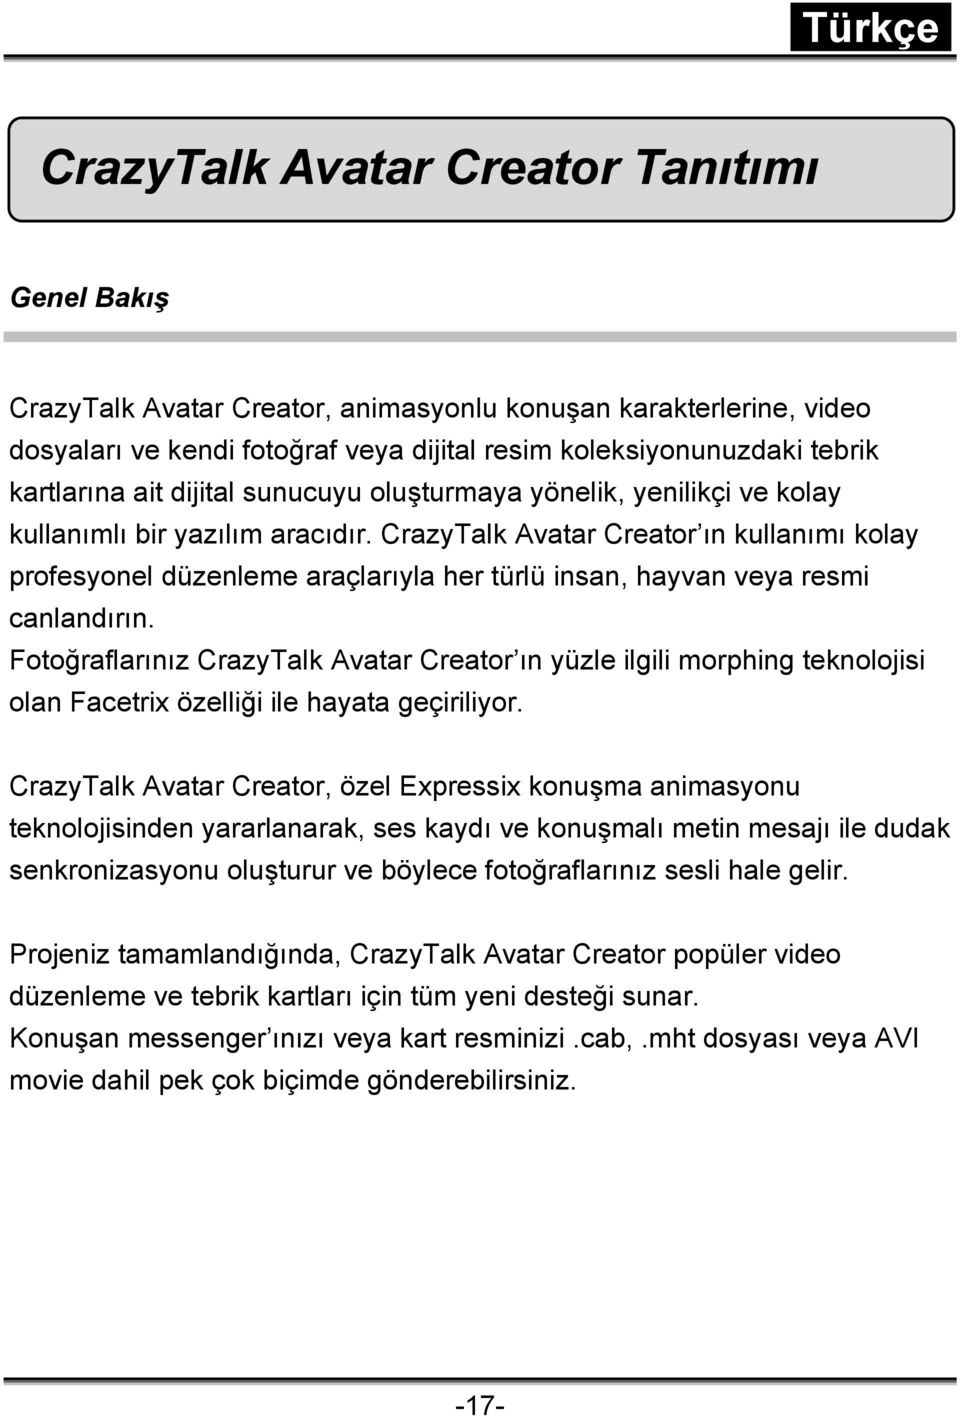 CrazyTalk Avatar Creator ın kullanımı kolay profesyonel düzenleme araçlarıyla her türlü insan, hayvan veya resmi canlandırın.